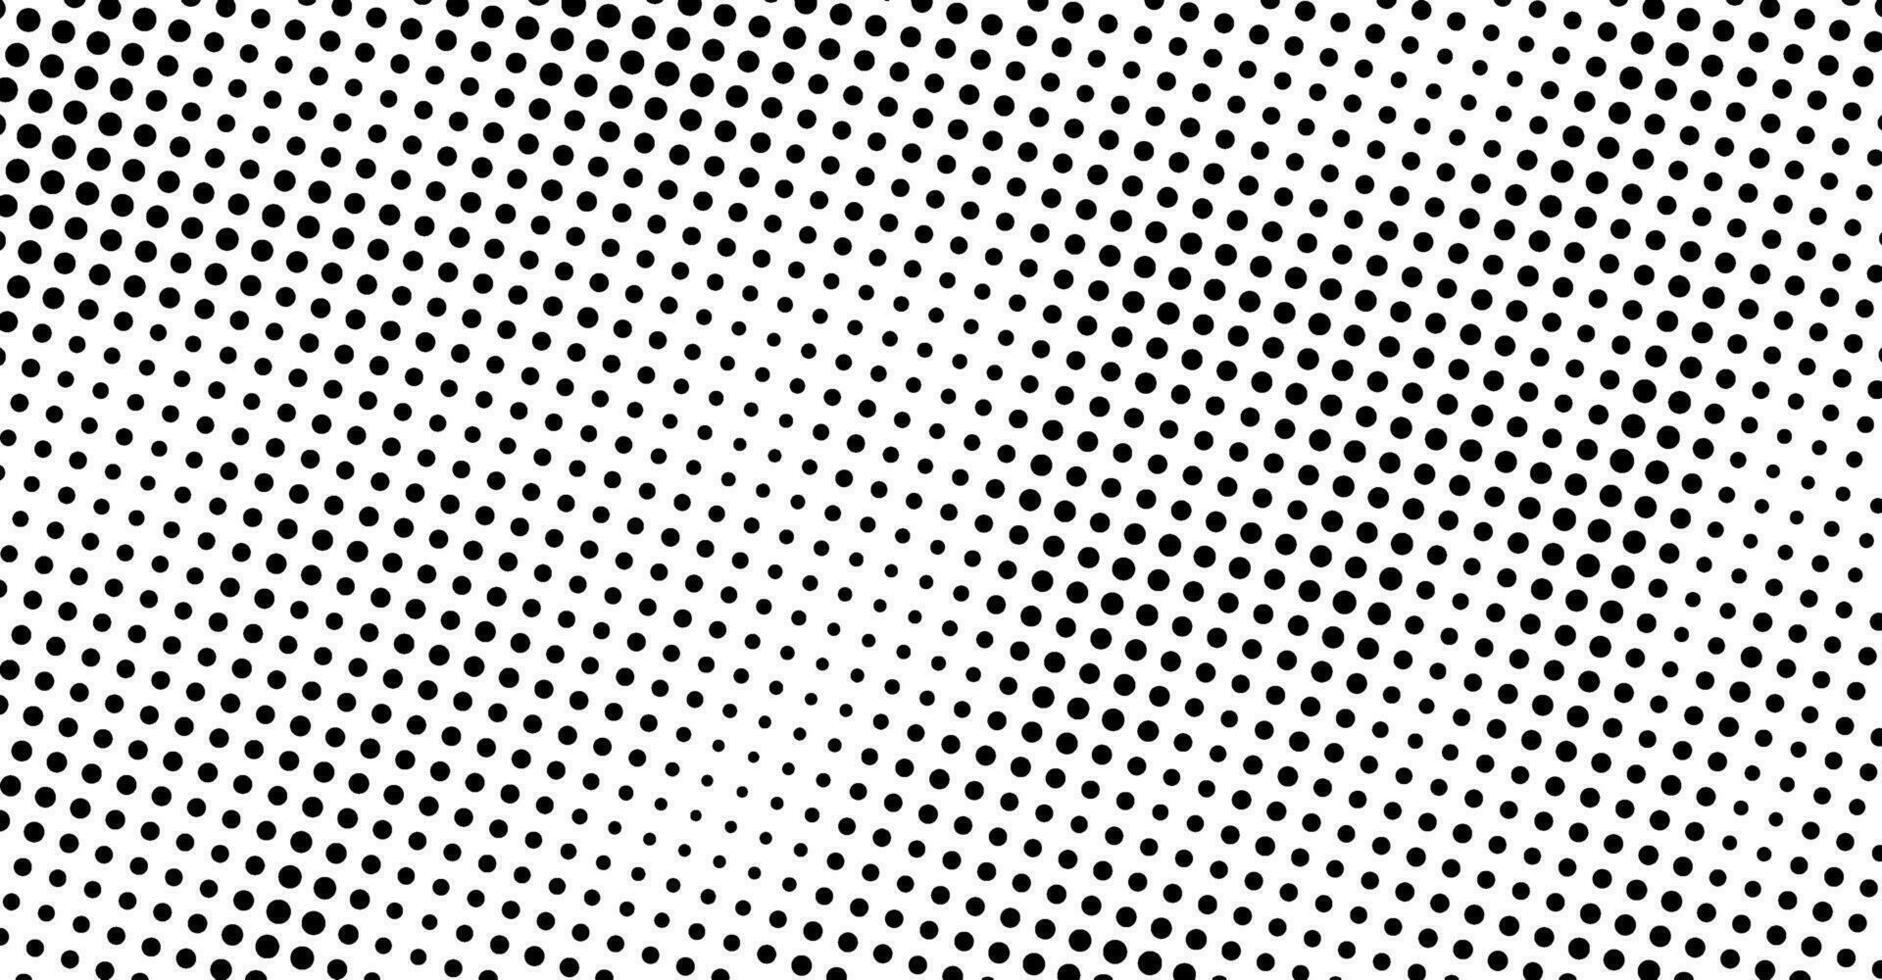 een zwart en wit halftone patroon met dots vector